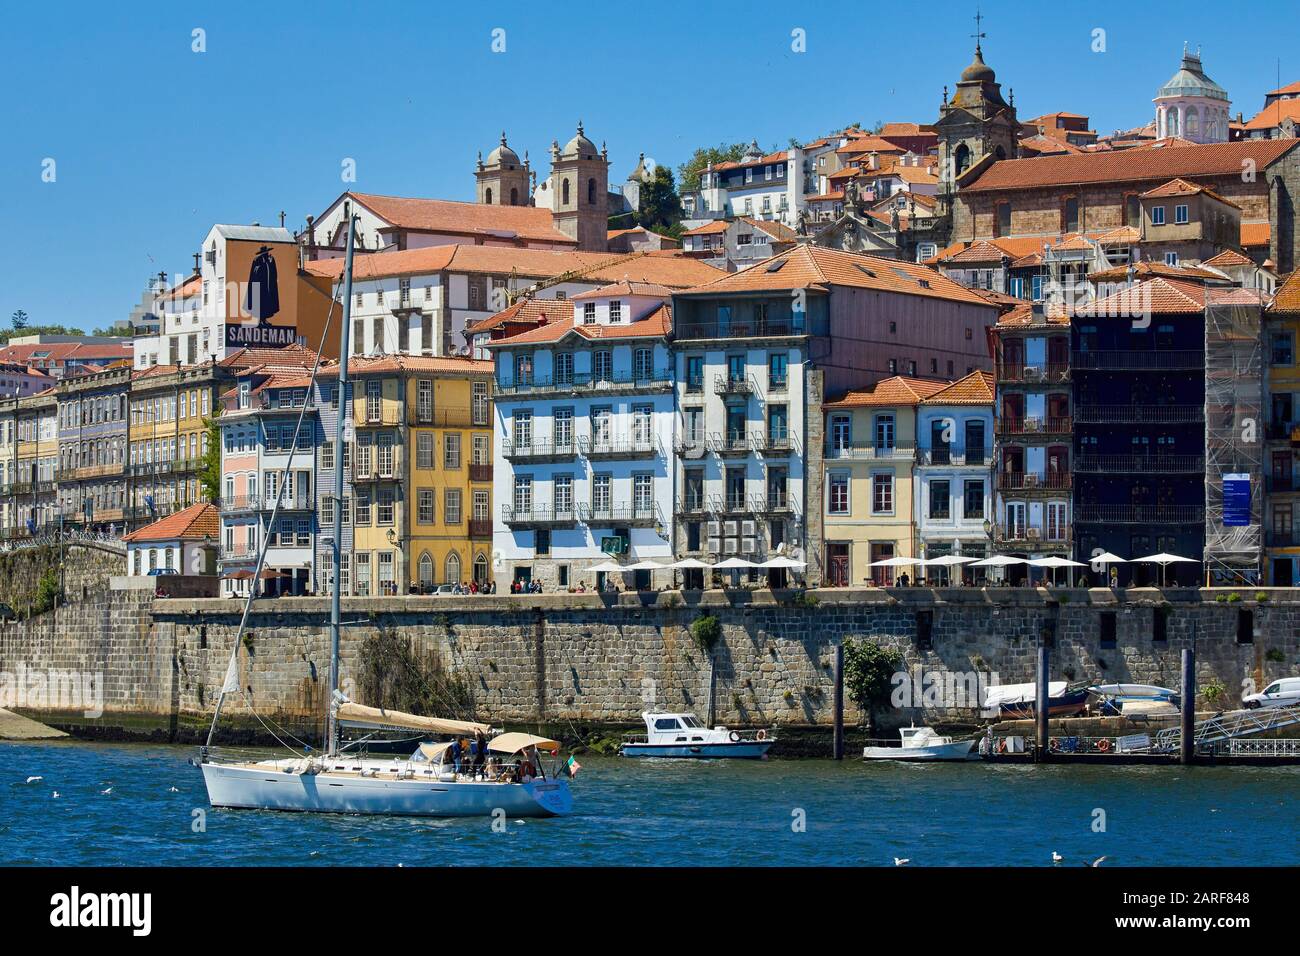 Tourist boats, Rio Douro river, Cais da Ribeira, Porto, Portugal Stock Photo